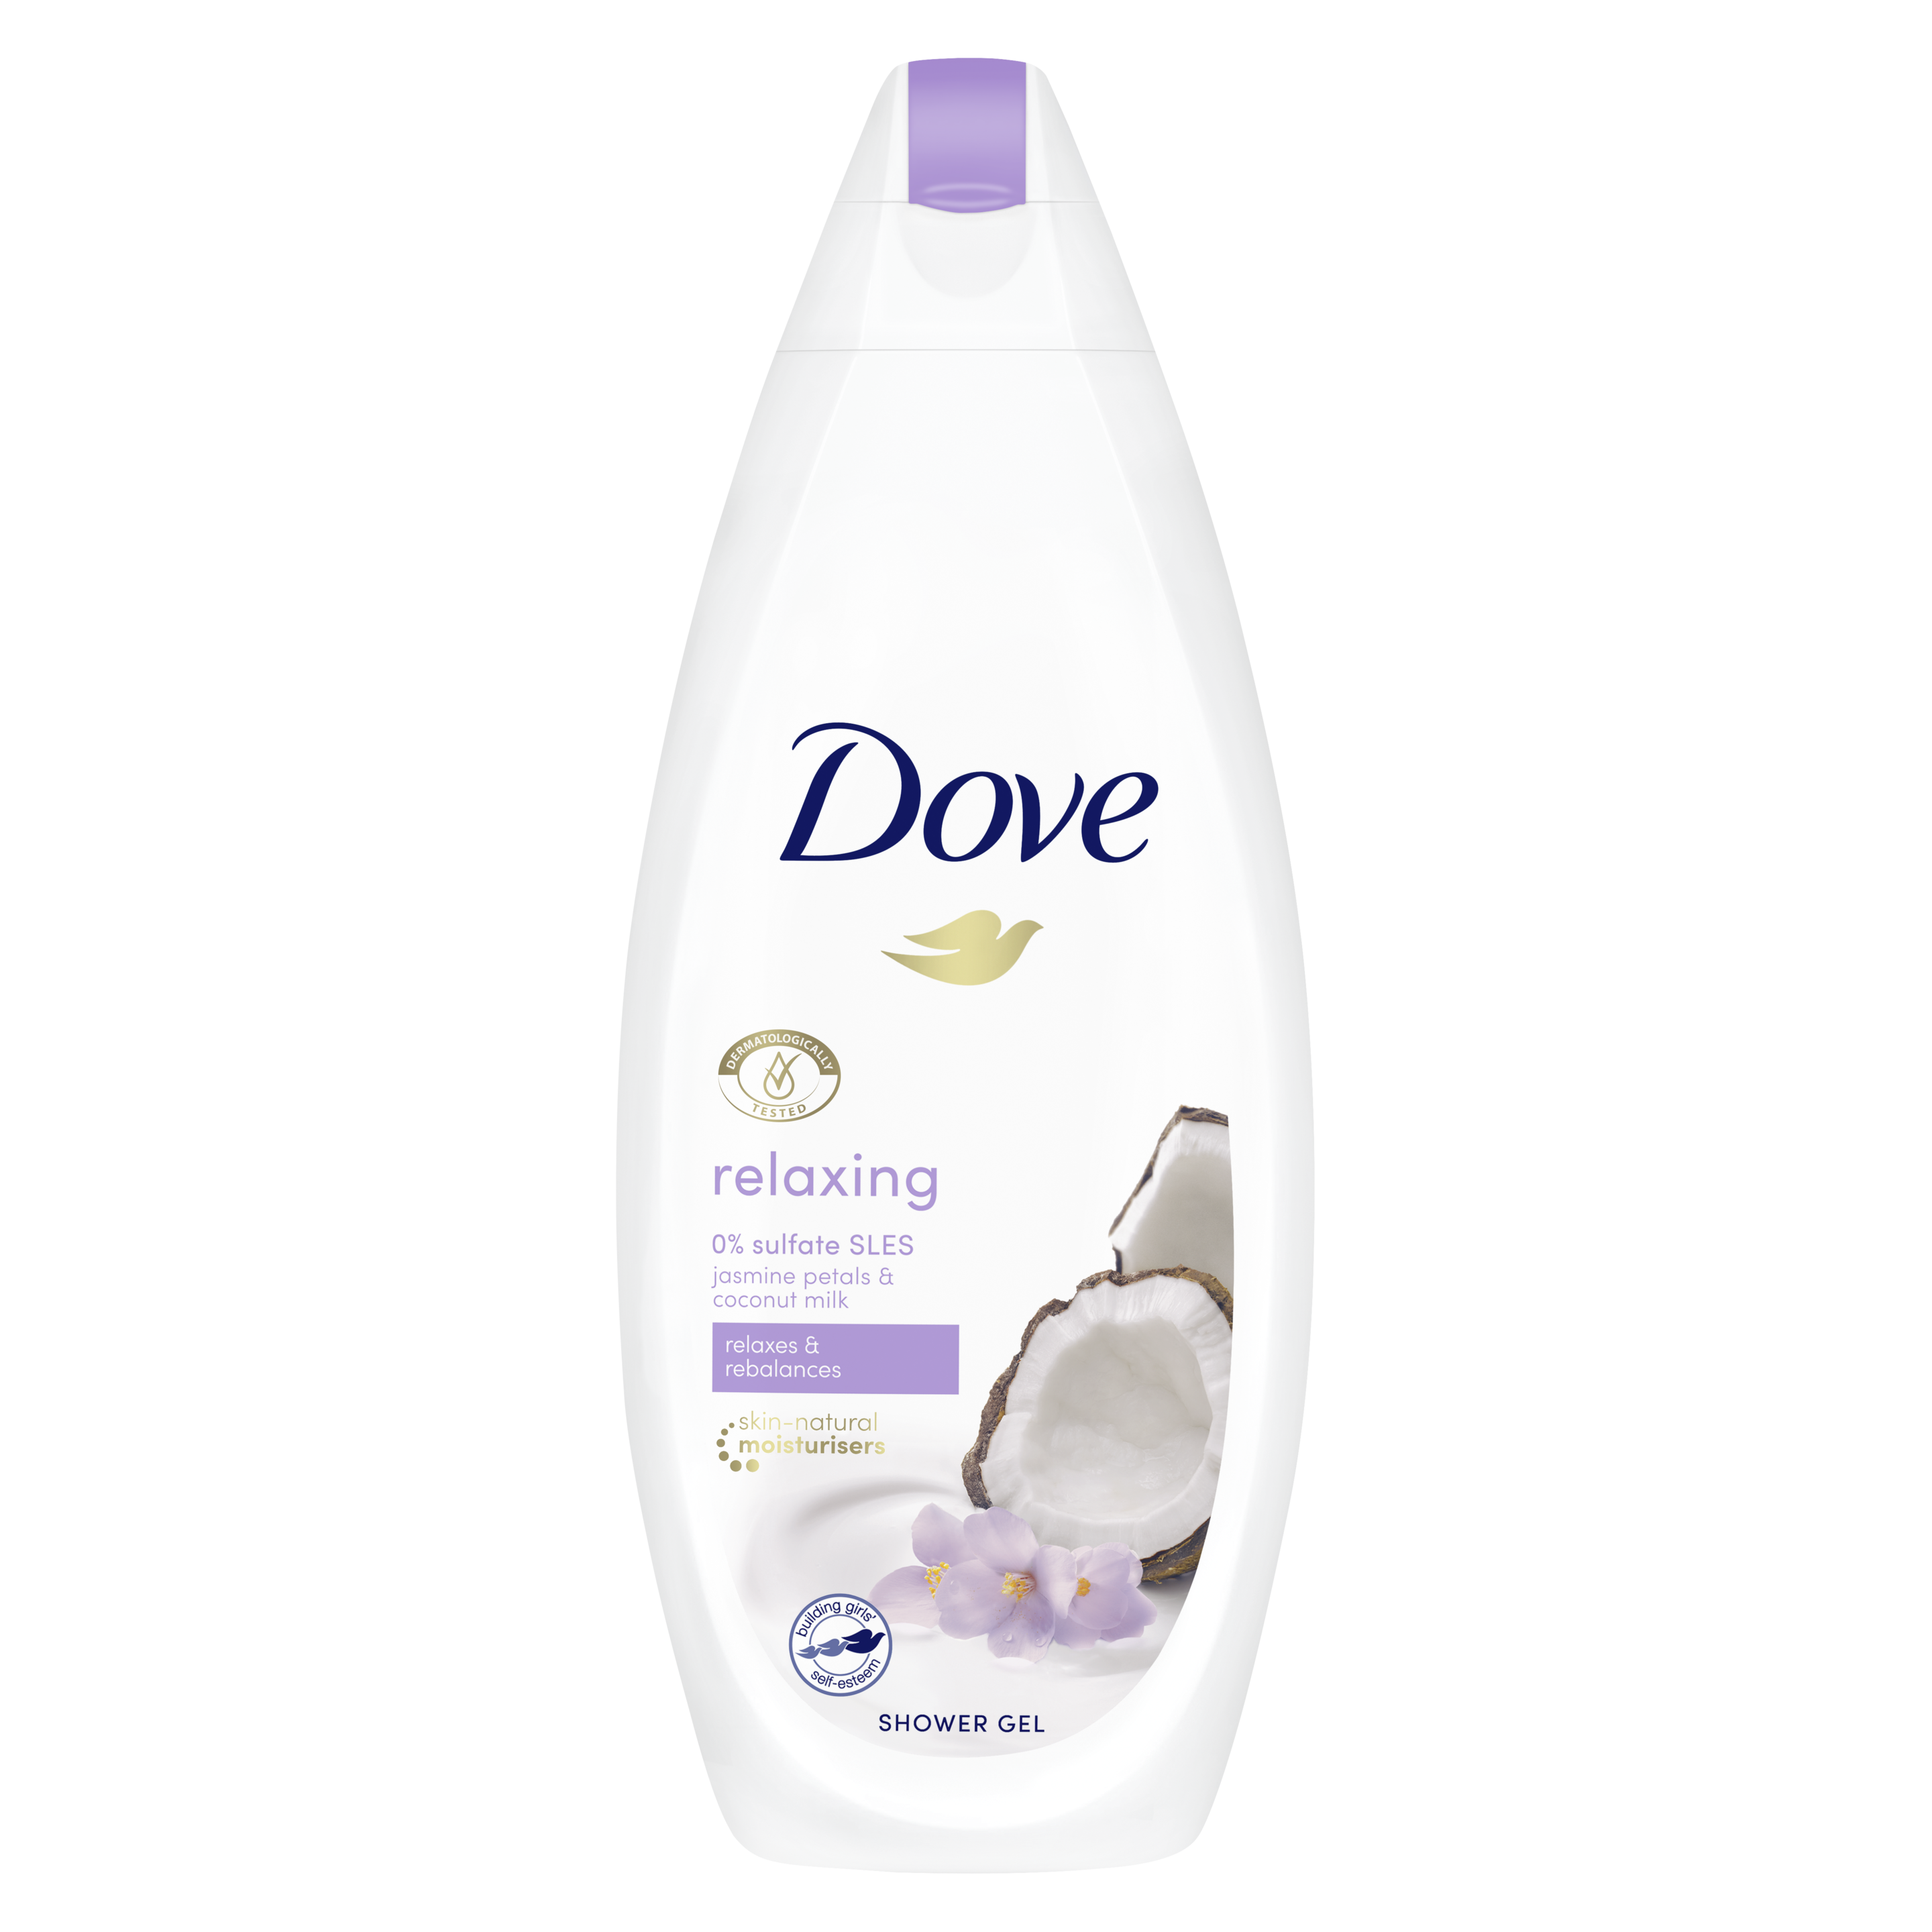 Dove Relaxing Coconut Milk and Jasmine Petal Shower Gel 250ml